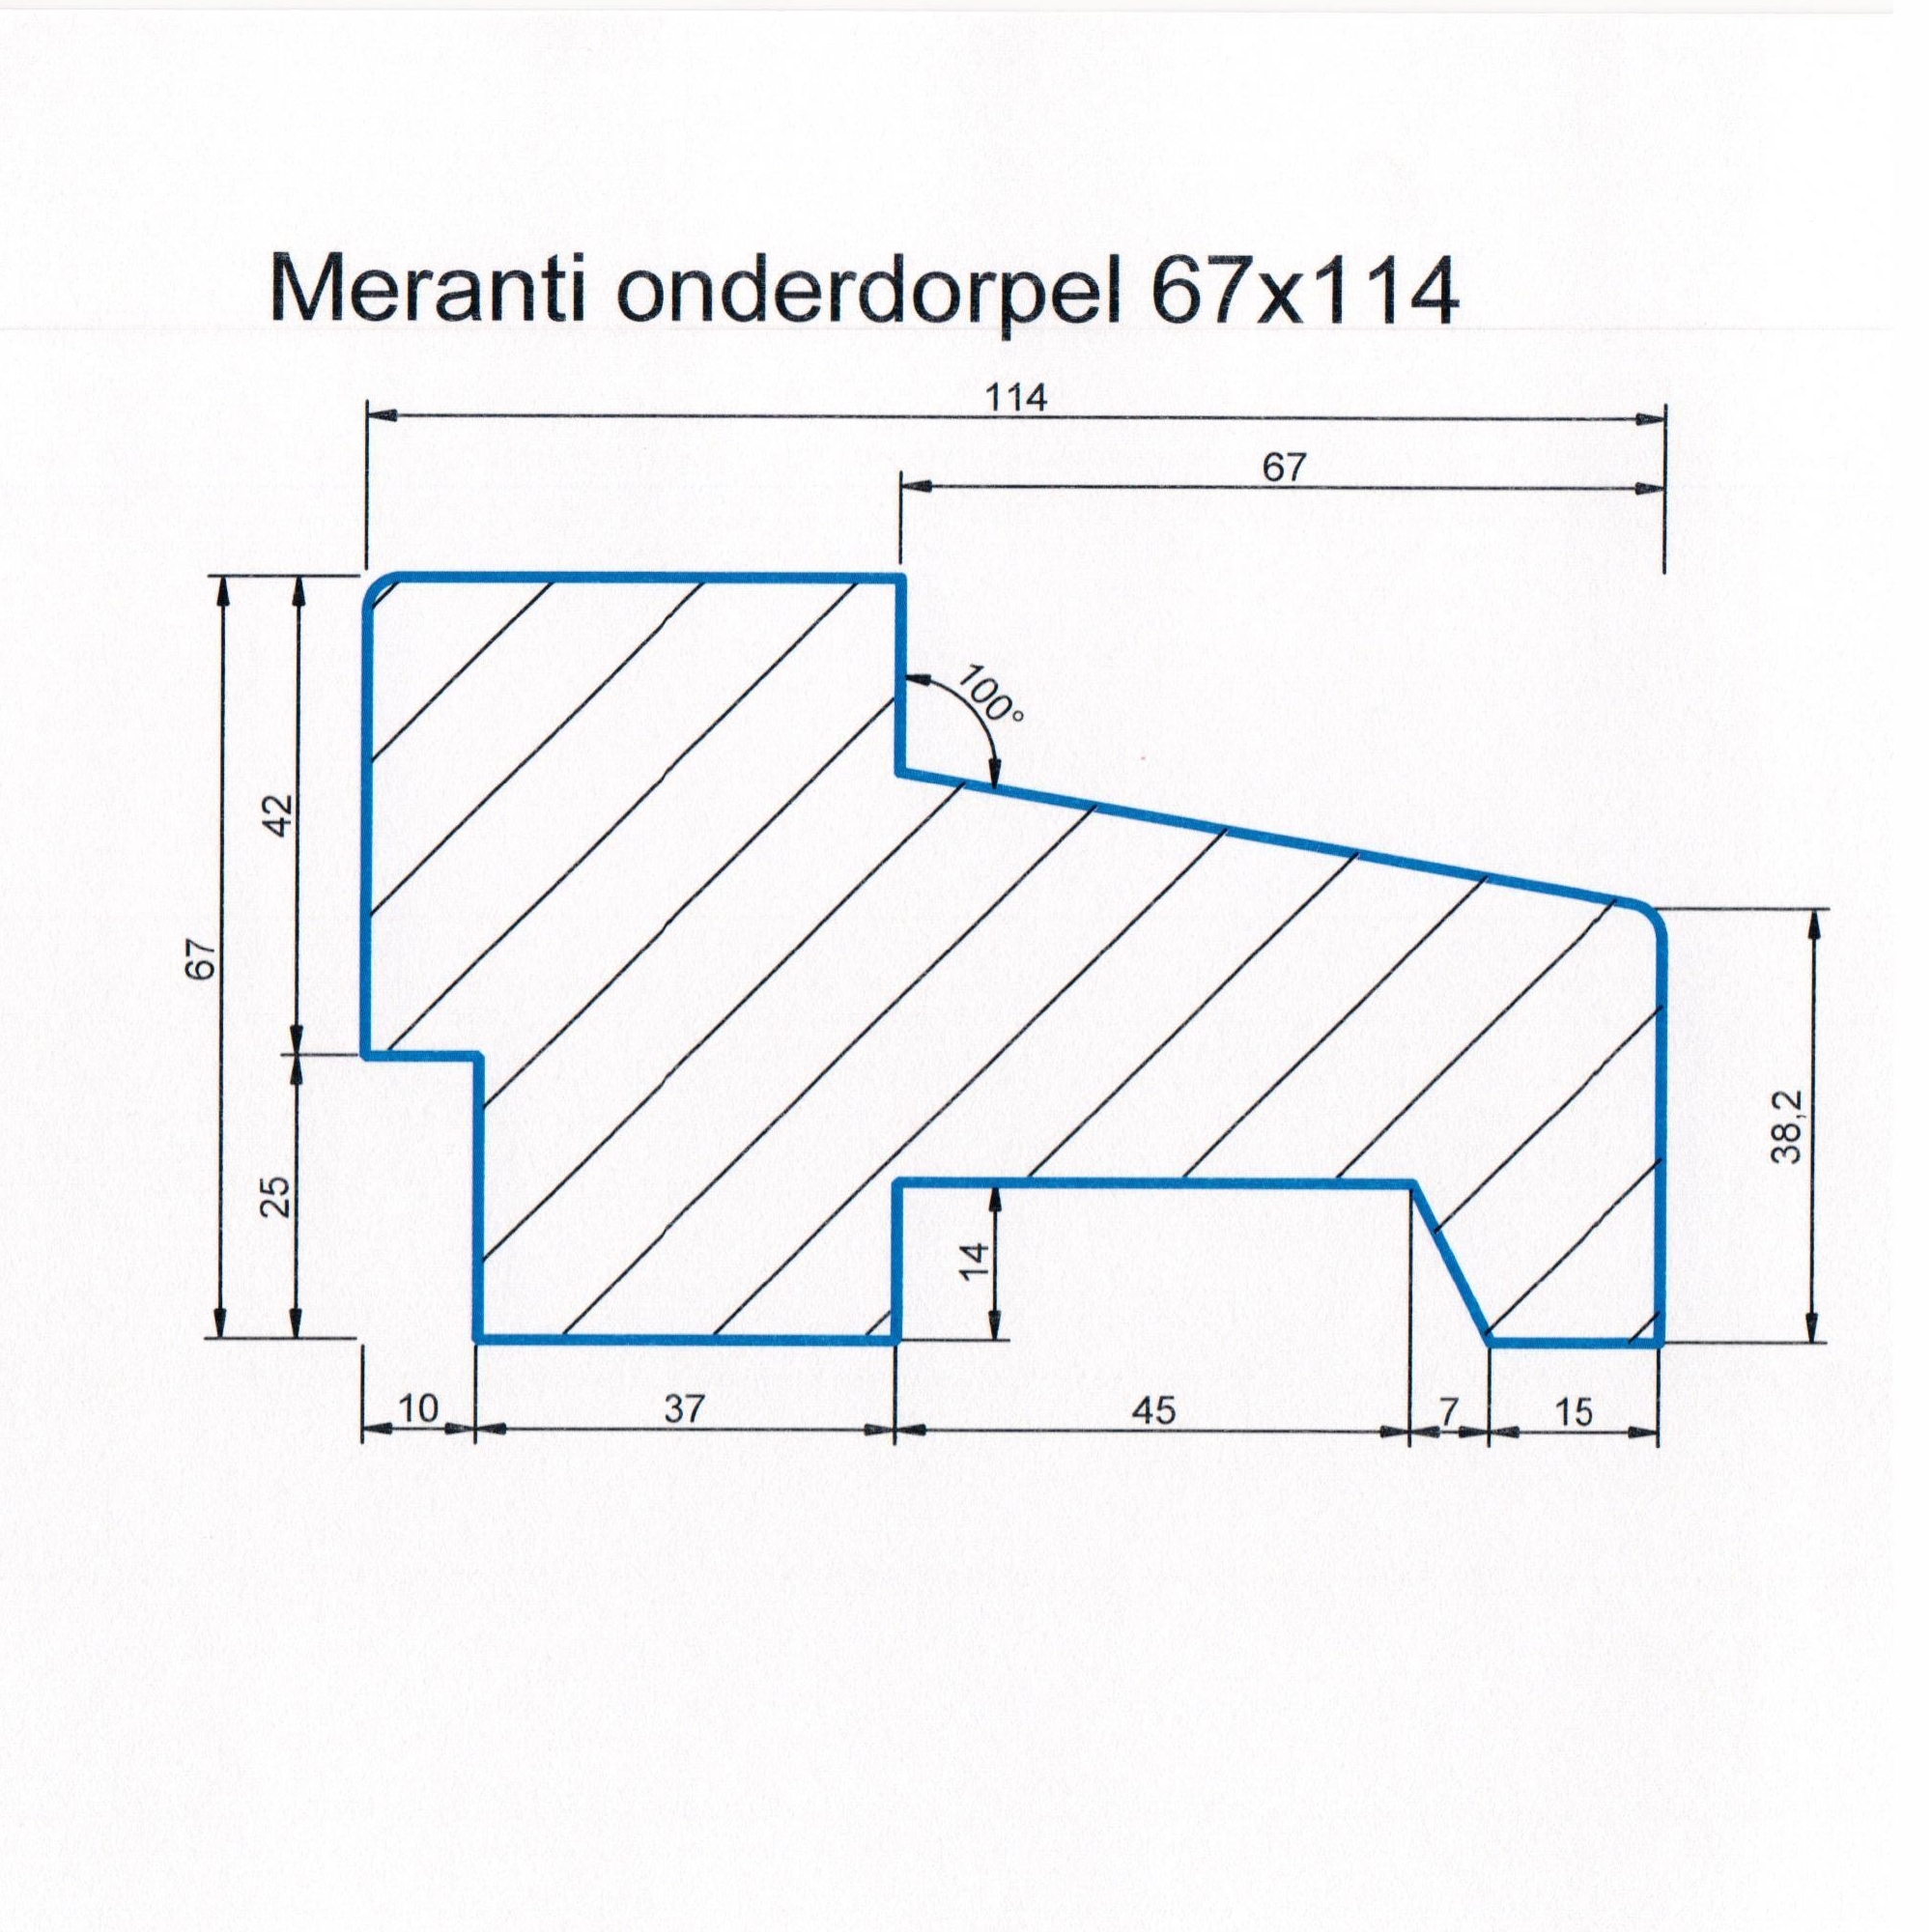 Meranti 67x114 kozijnhout onderdorpel L=1200 mm